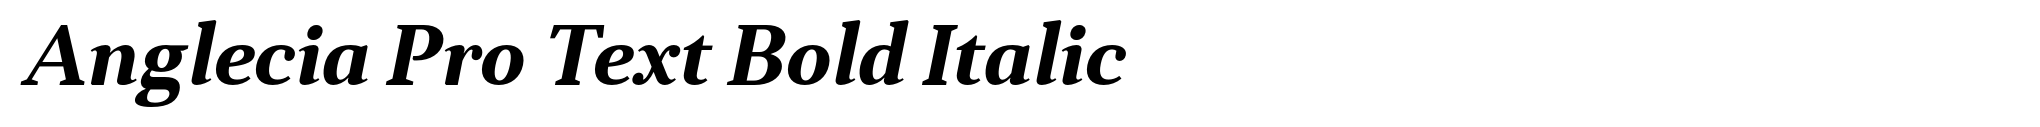 Anglecia Pro Text Bold Italic image